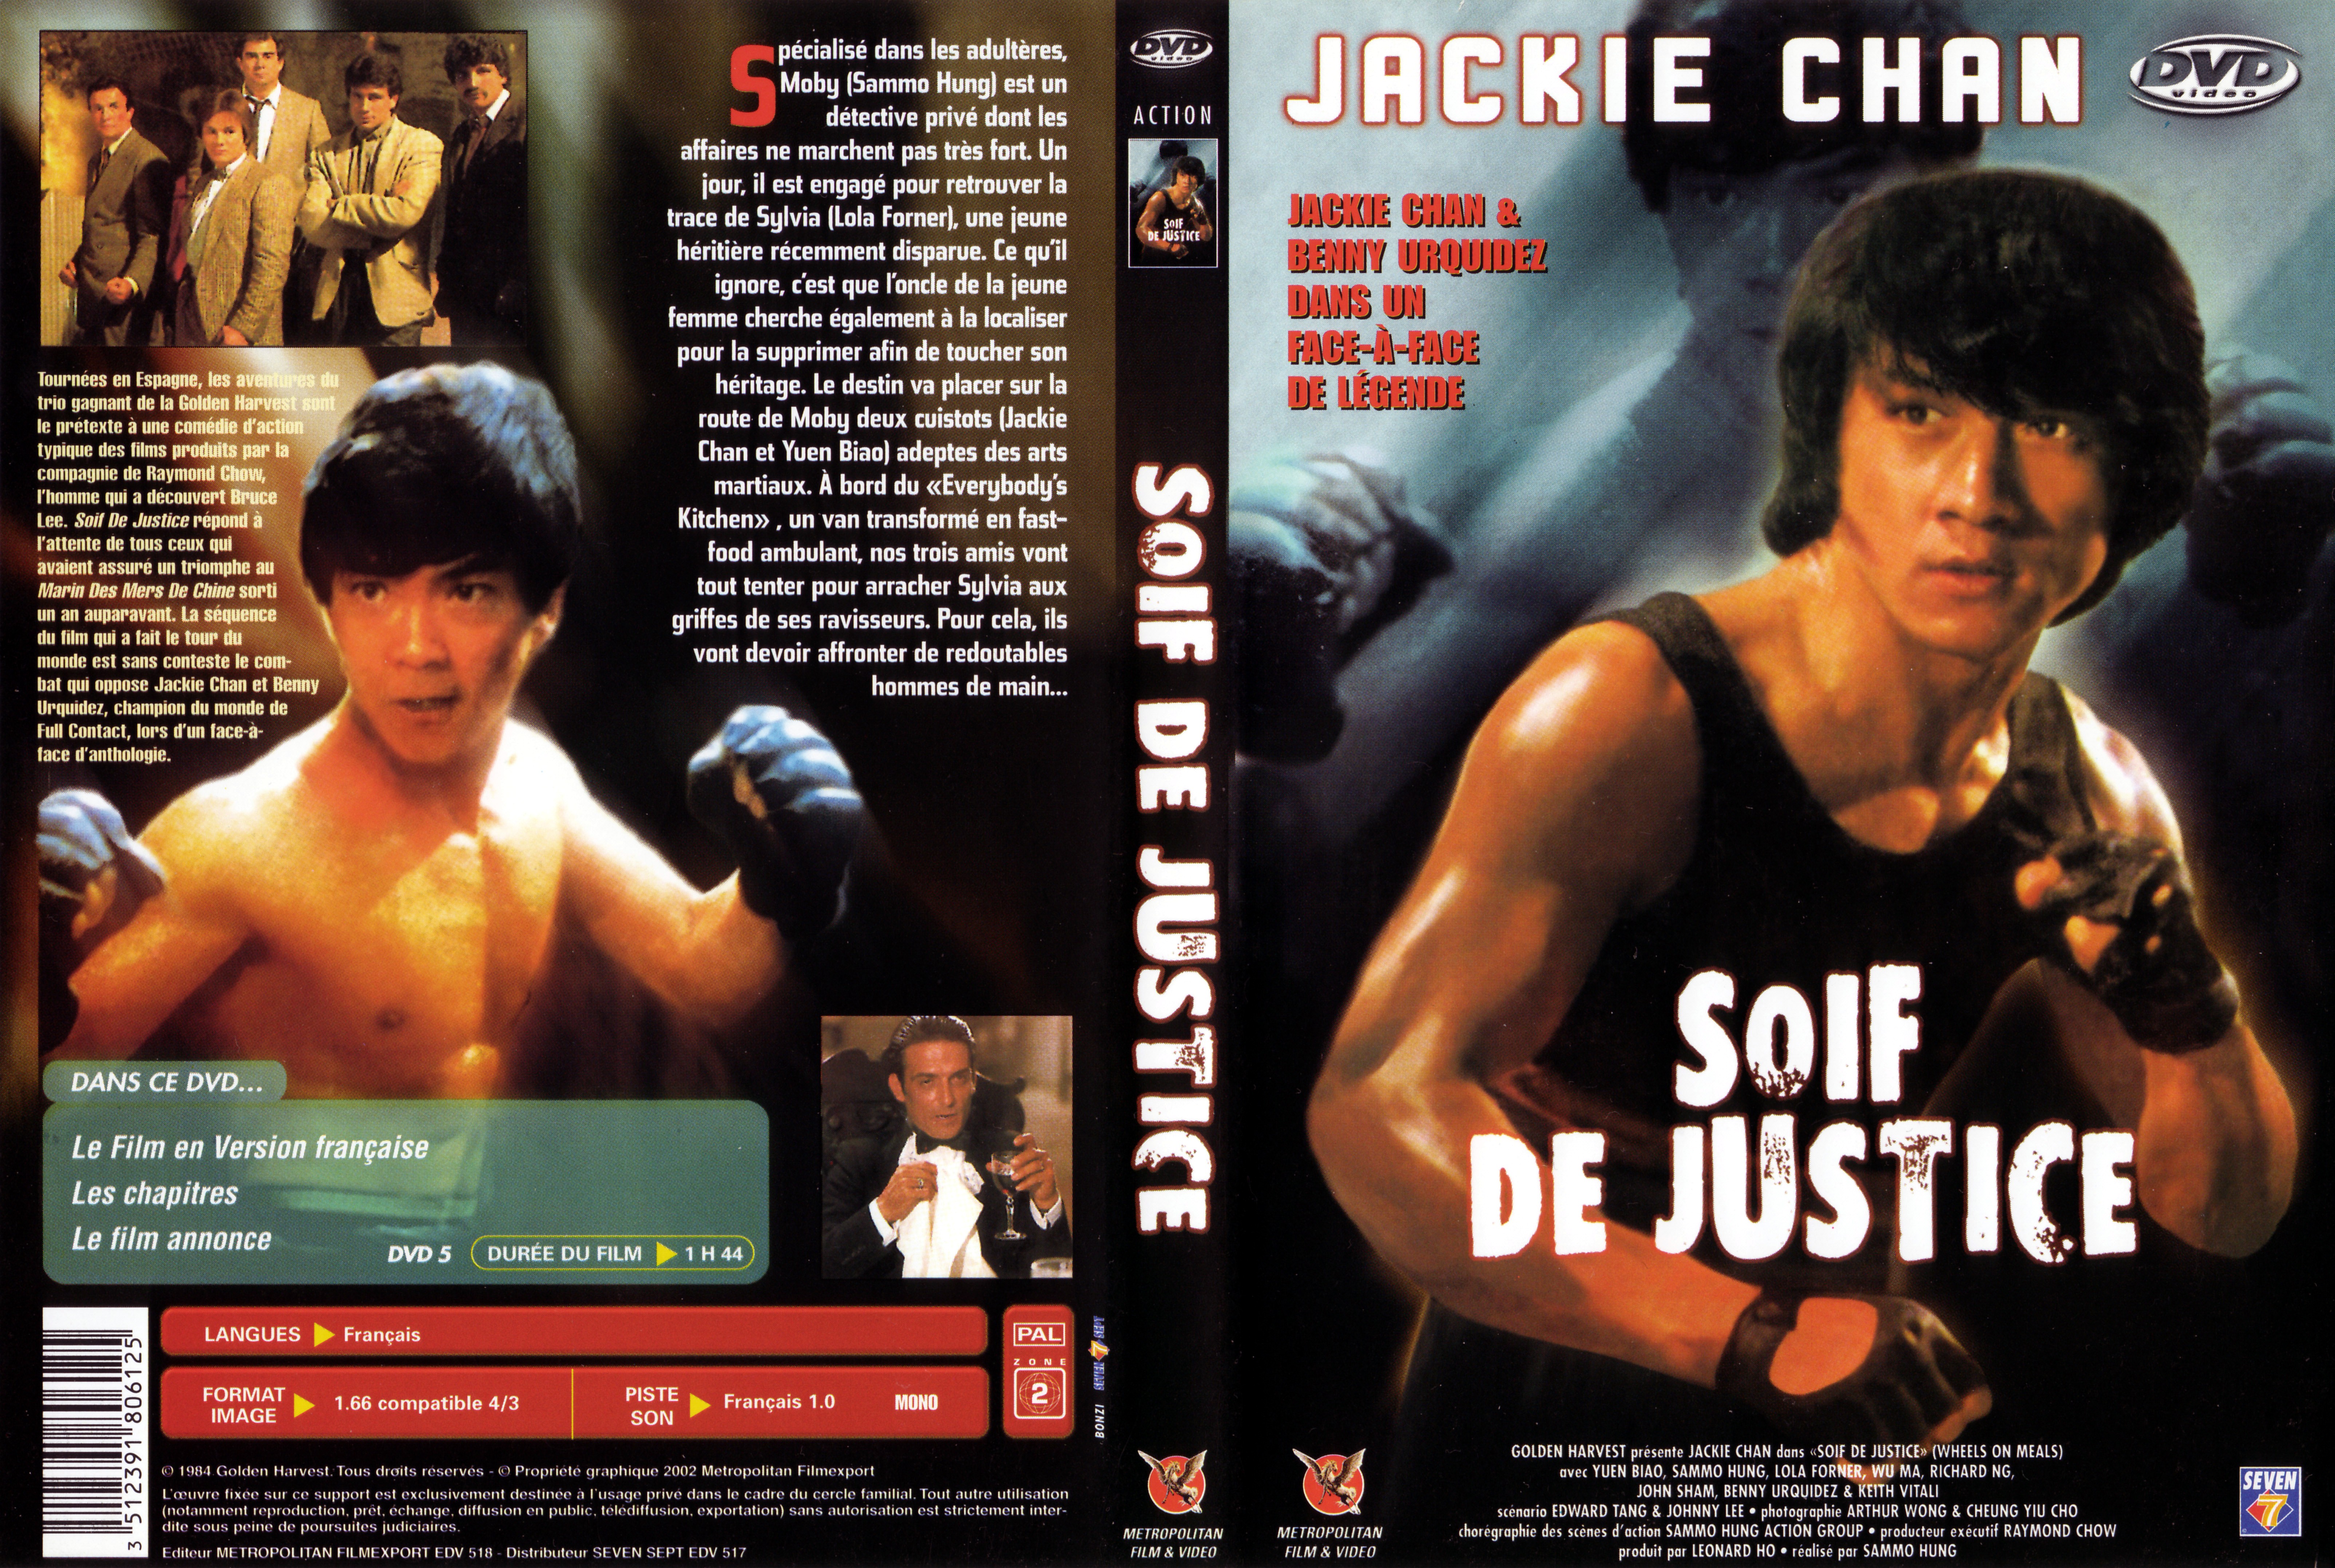 Jaquette DVD Soif de justice